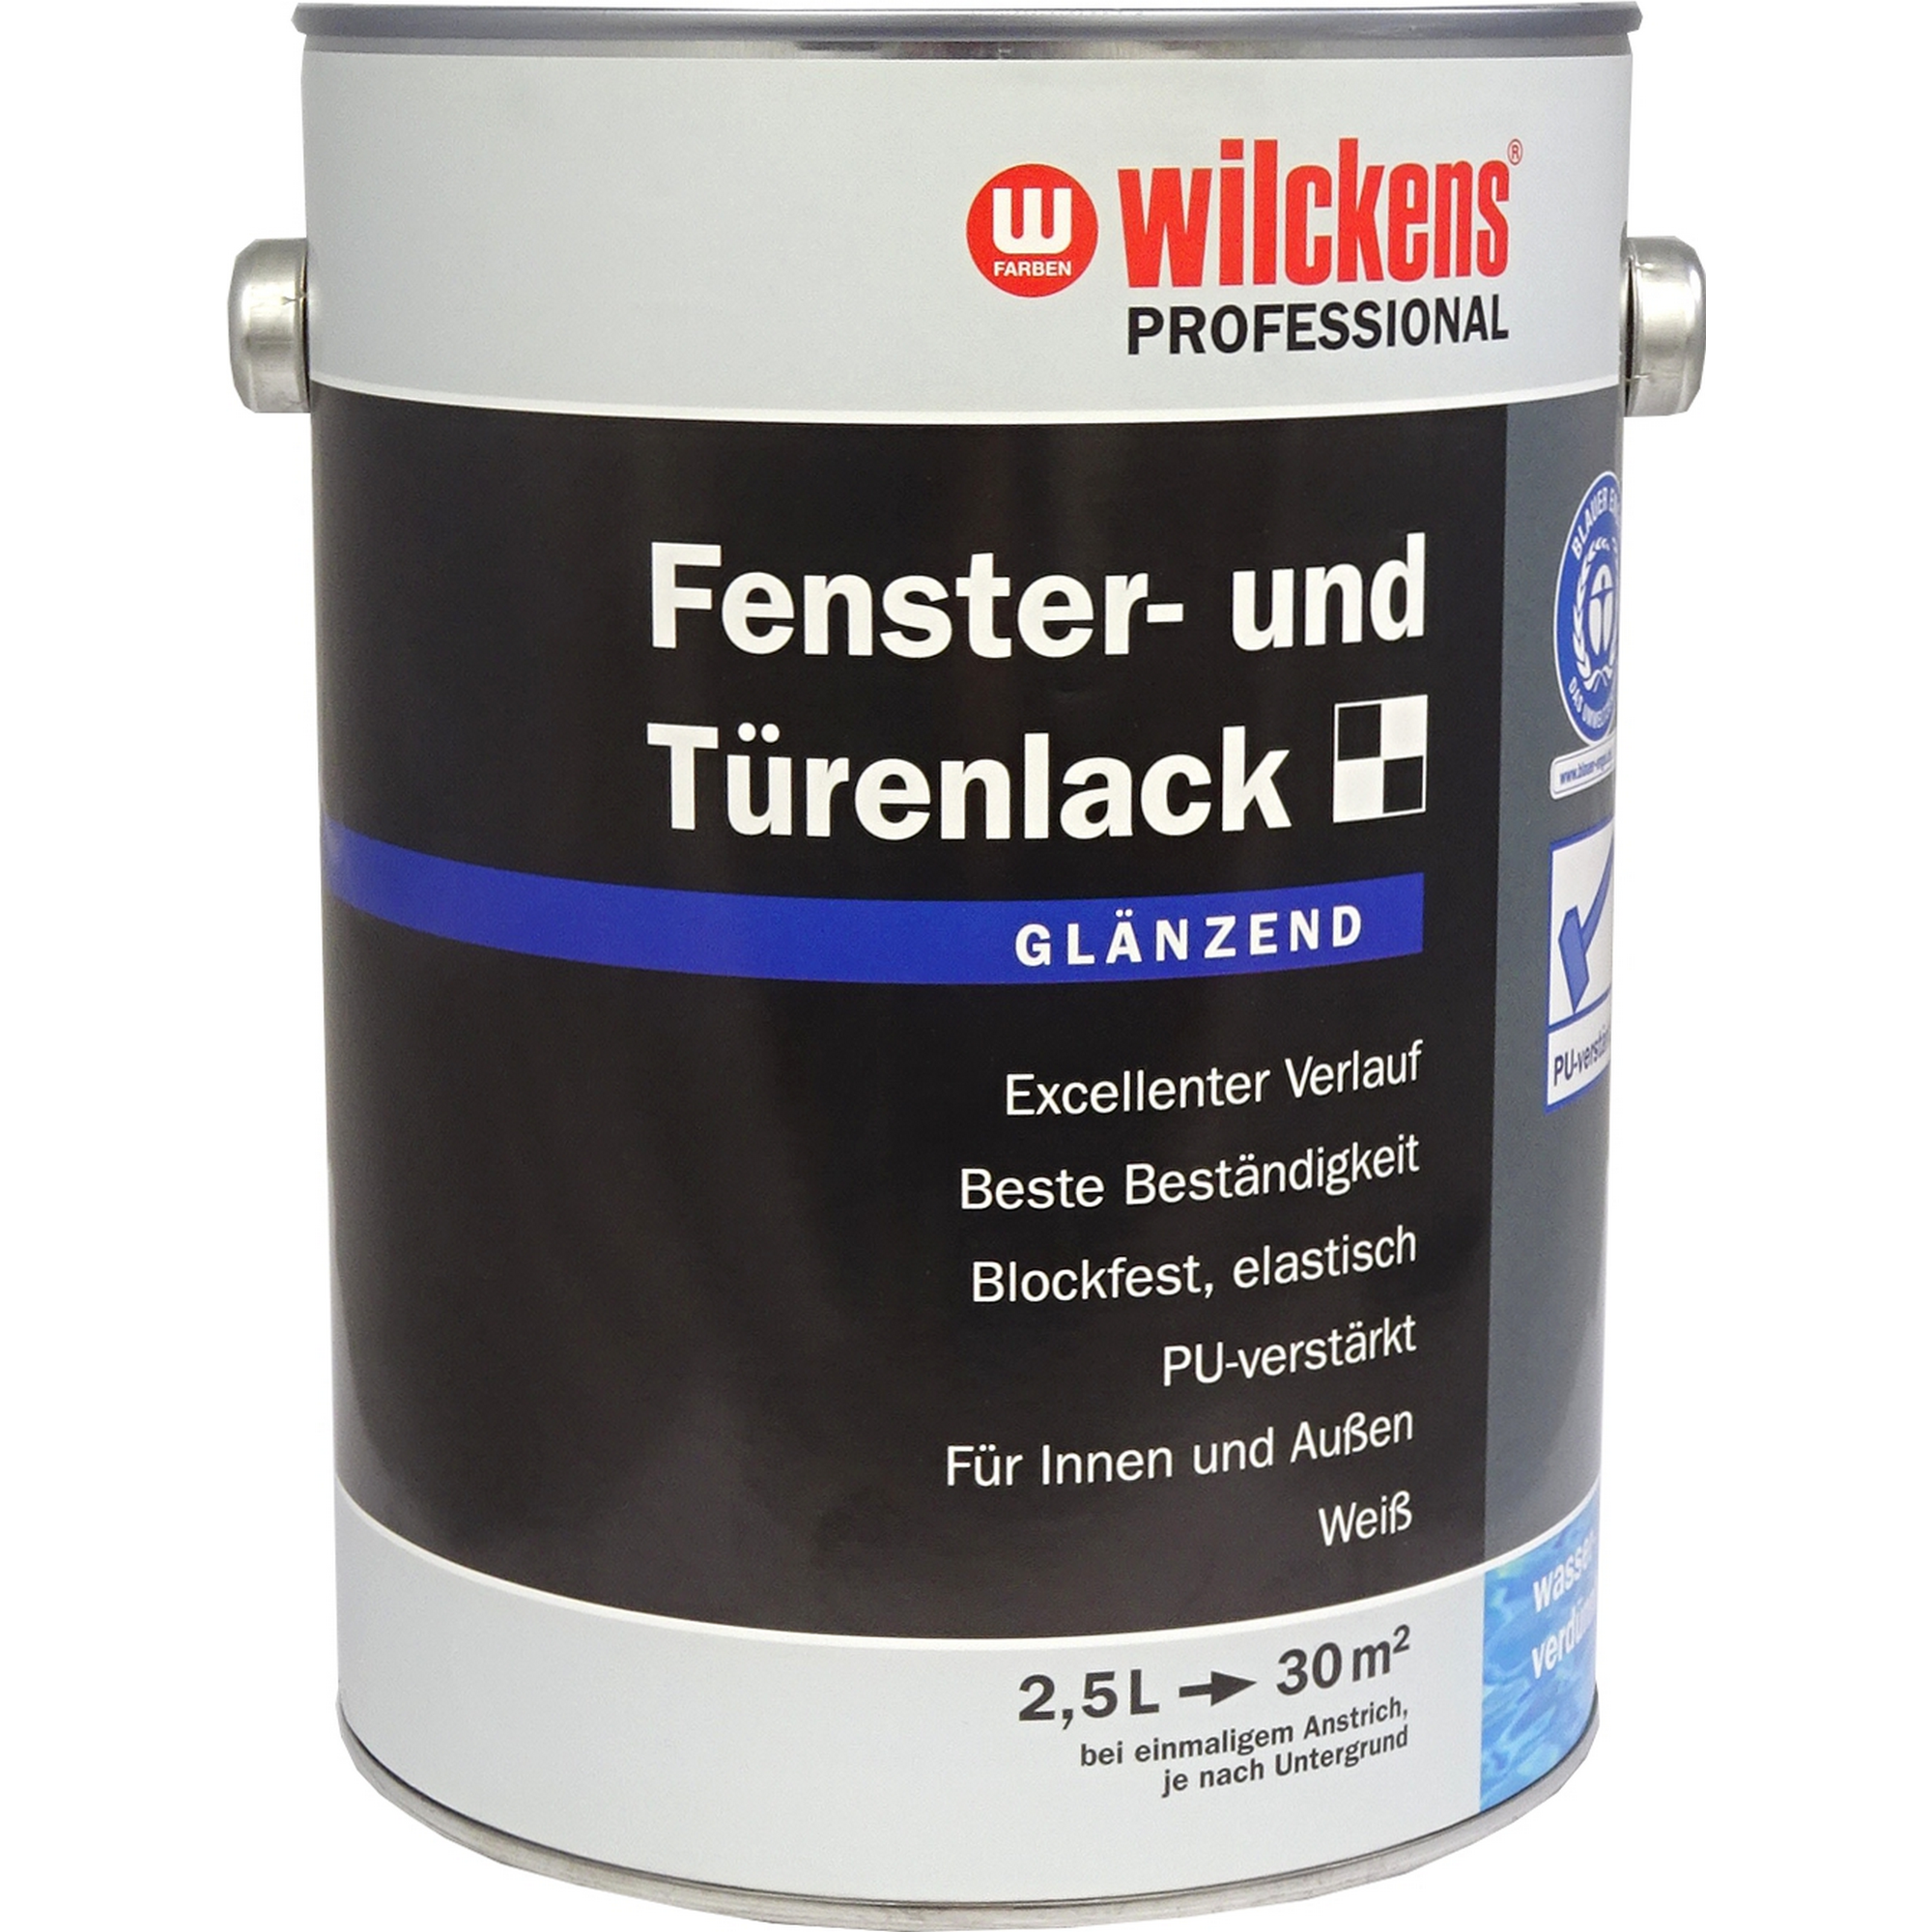 Fenster- & Türenlack 'Professional' weiß glänzend 2,5 l + product picture